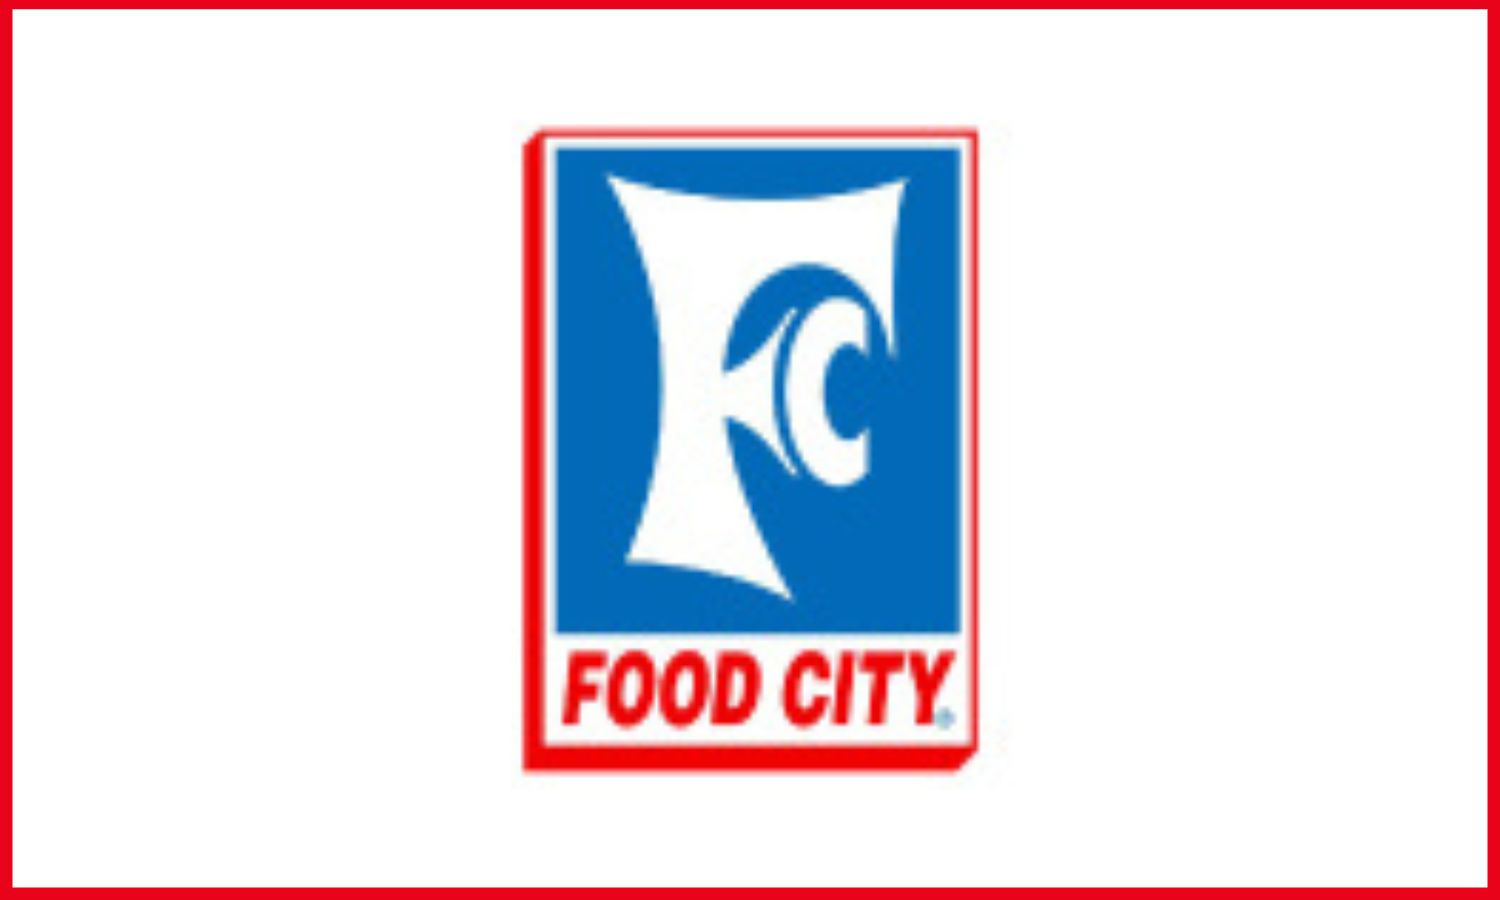 Food City logo